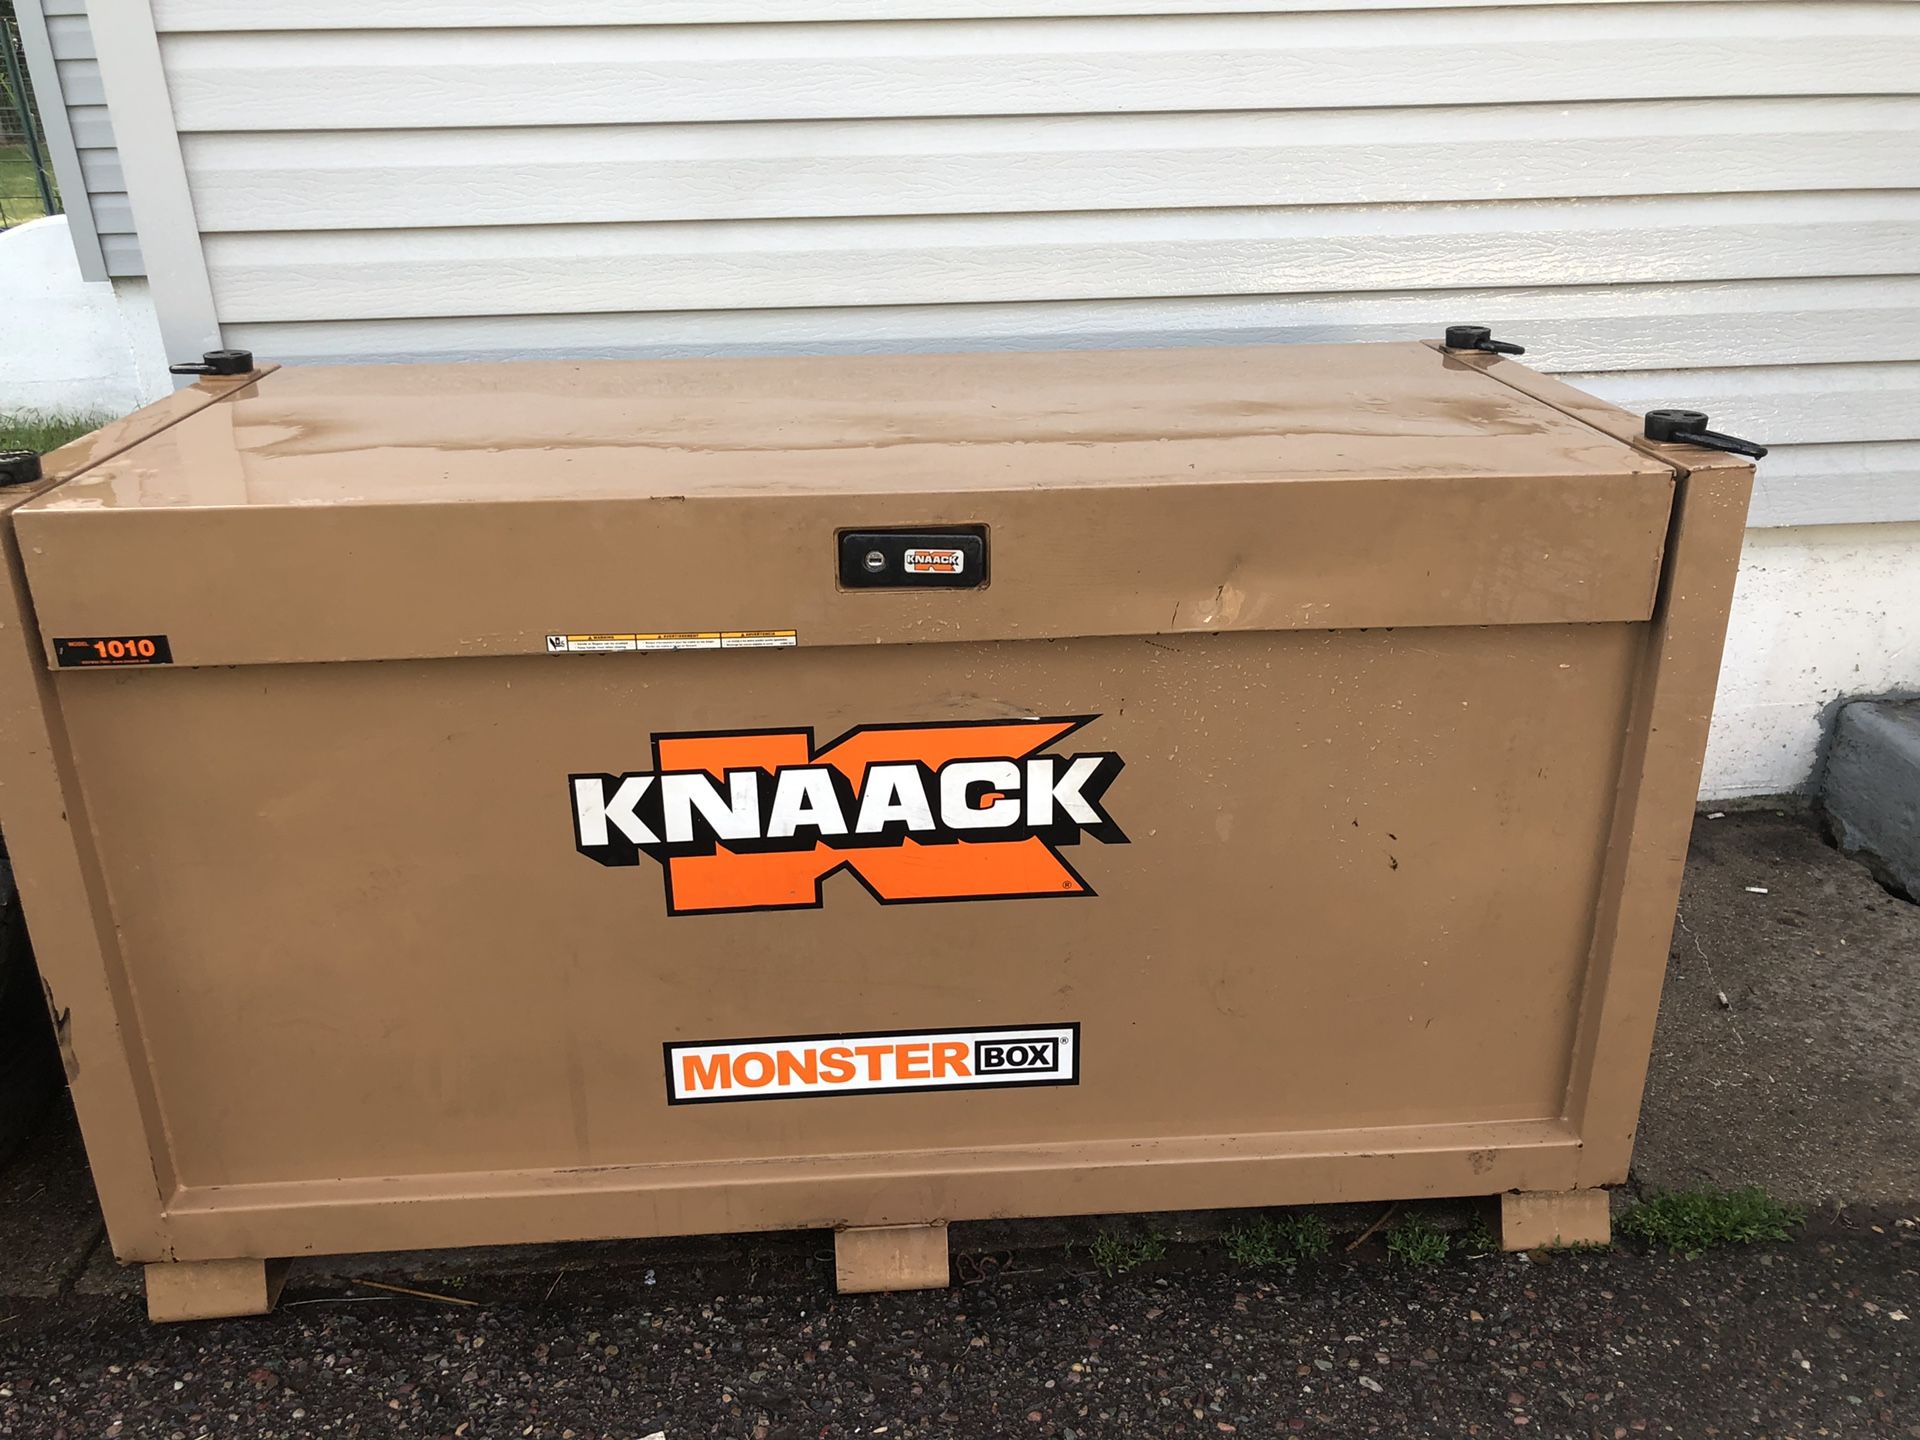 Knaack Box (Monster Box) Model 1010 GUC